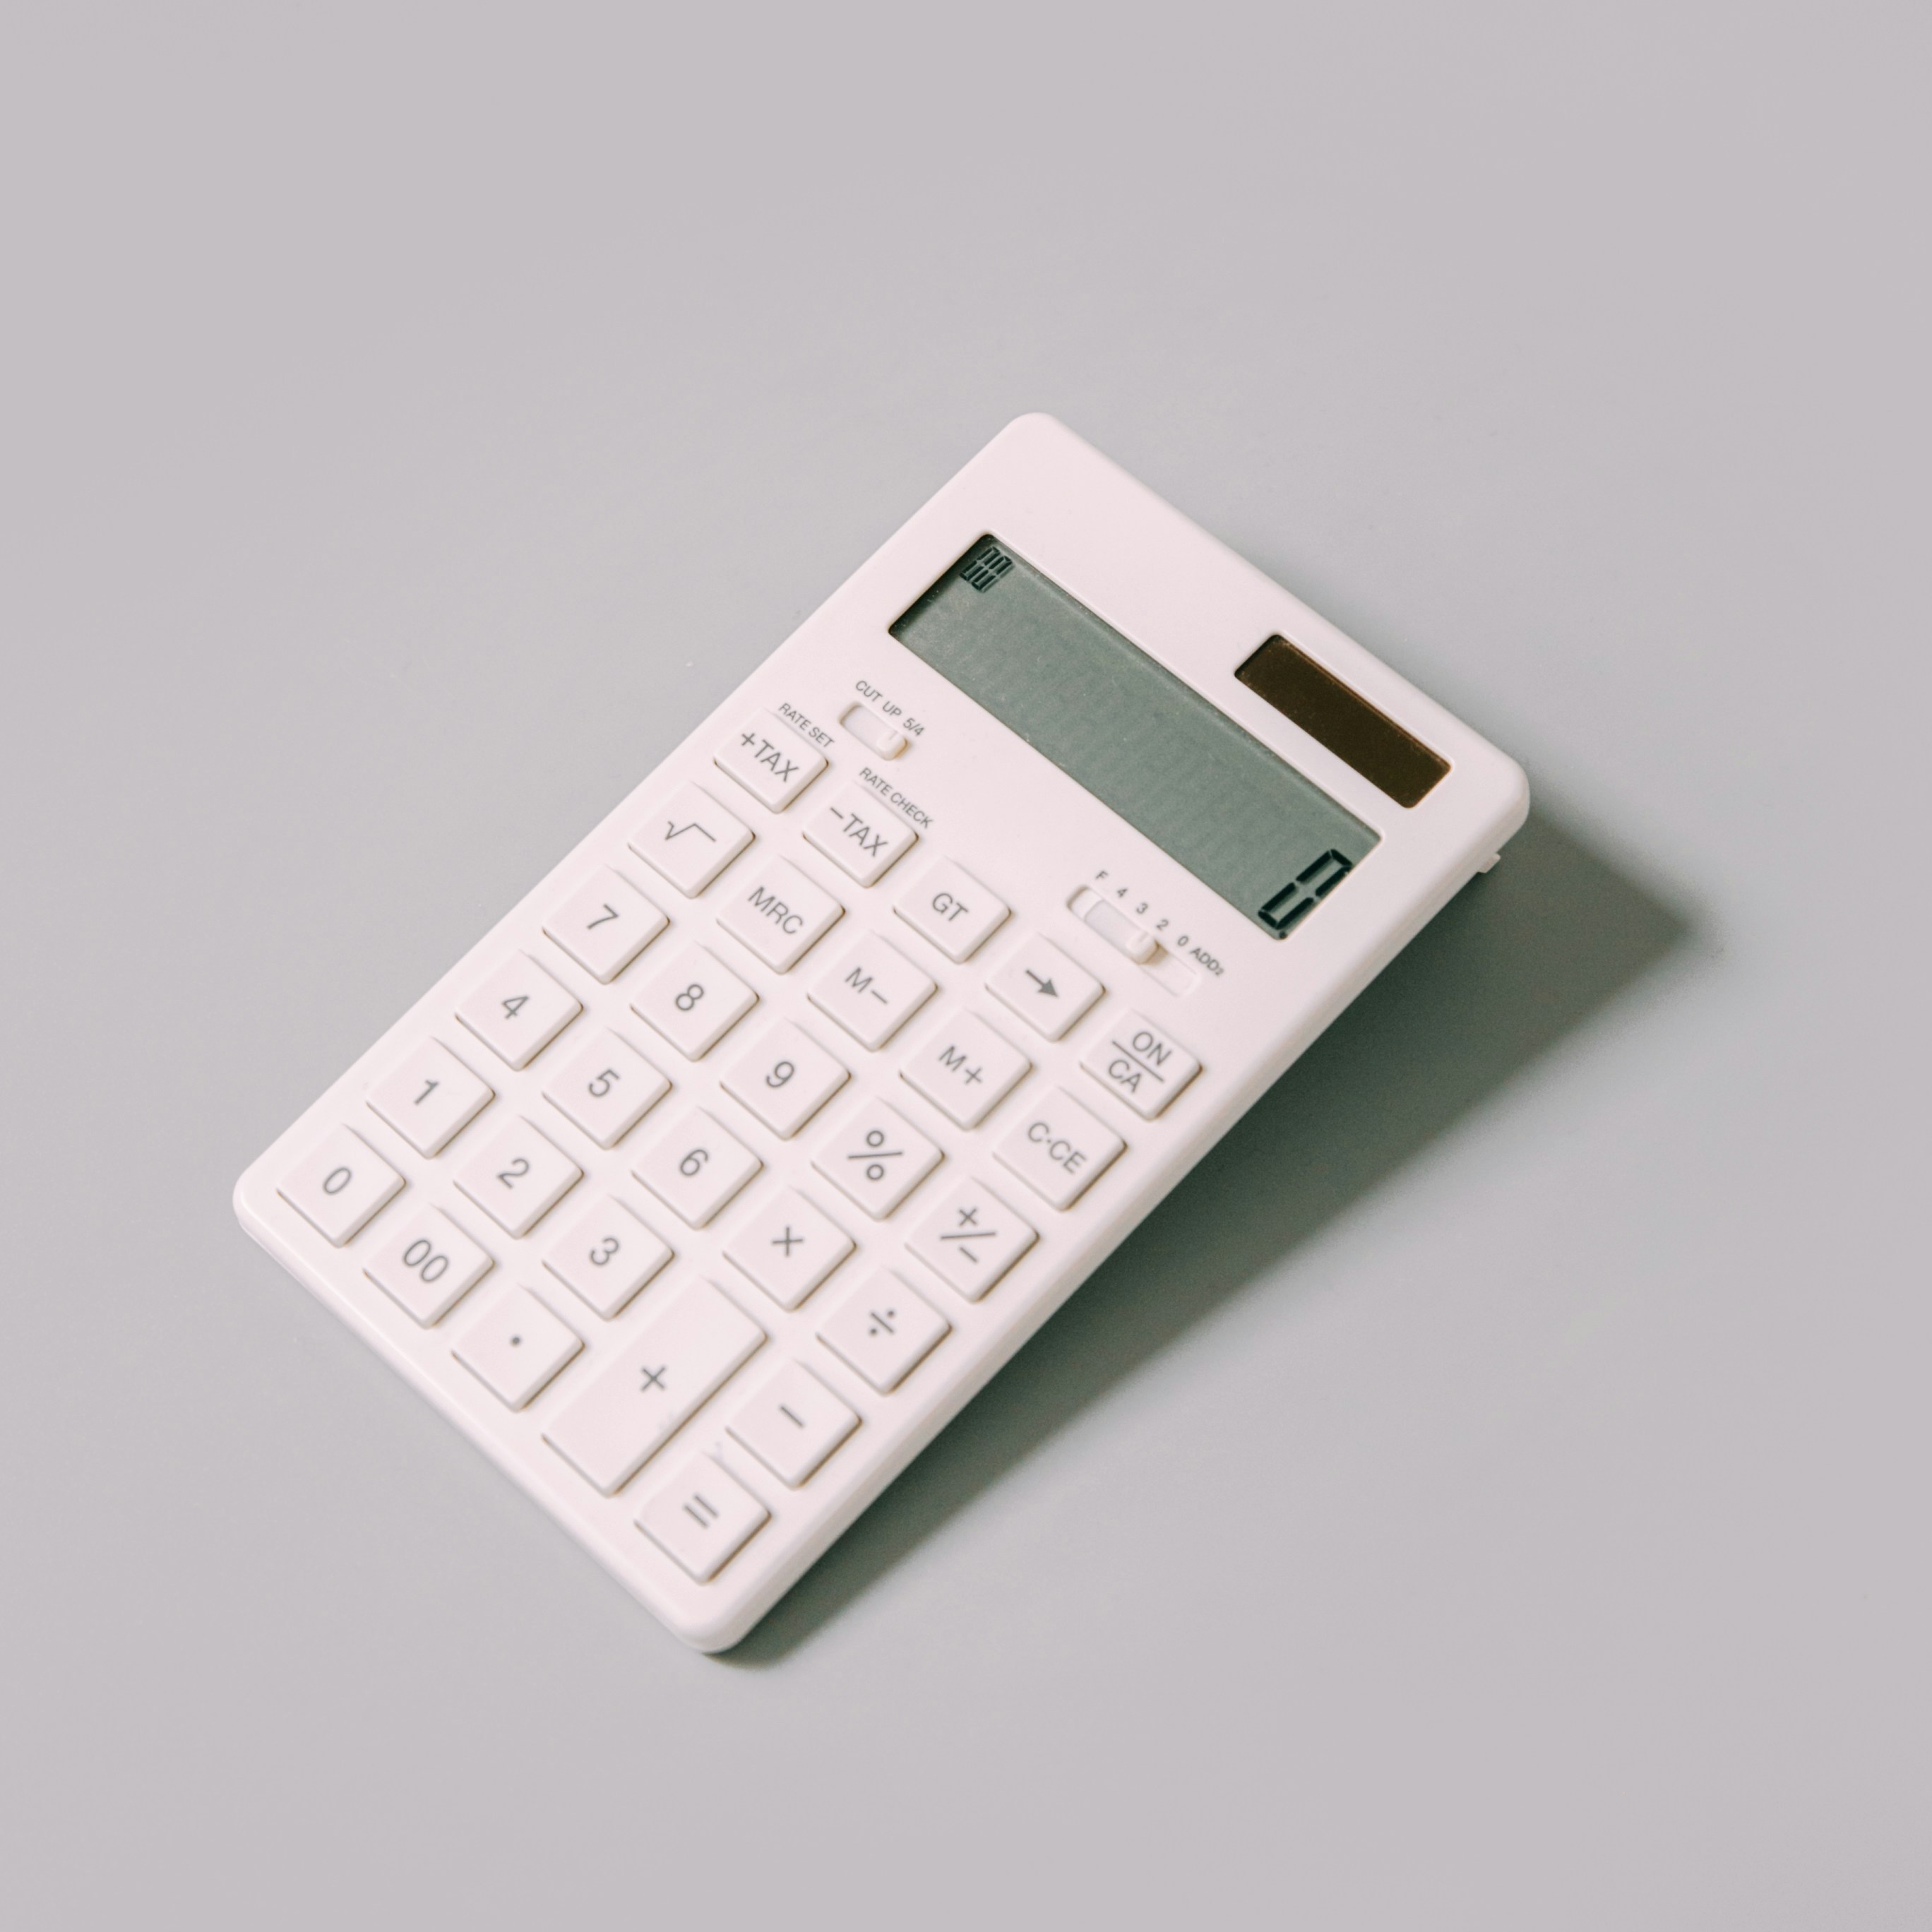 Ebike Range Calculator